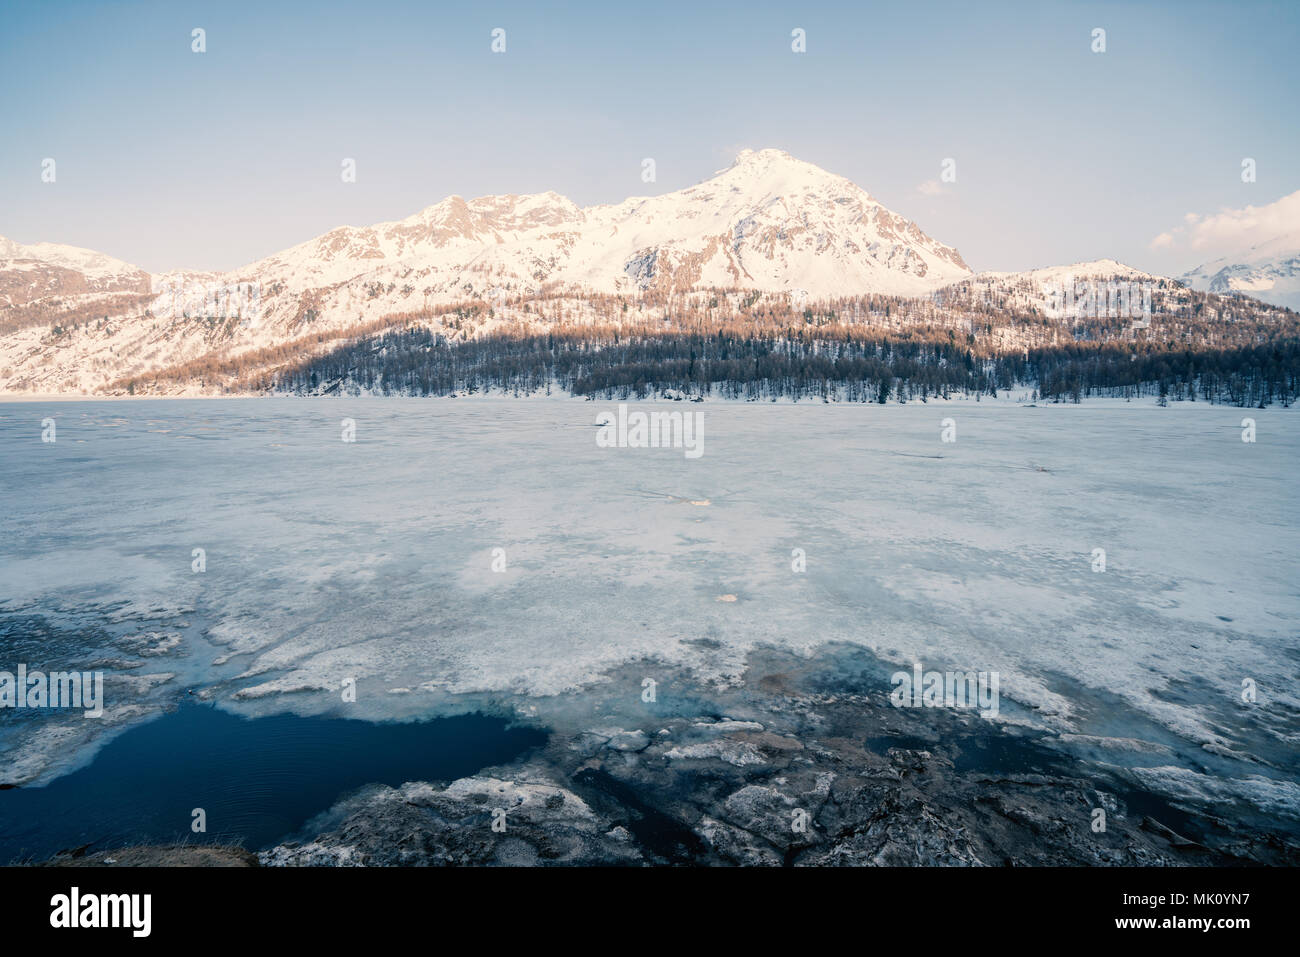 Belle vue sur le lac et montagnes aux sommets enneigés dans le canton des Grisons en Suisse, l'Europe. Les destinations de voyage pas de personnes concept Banque D'Images